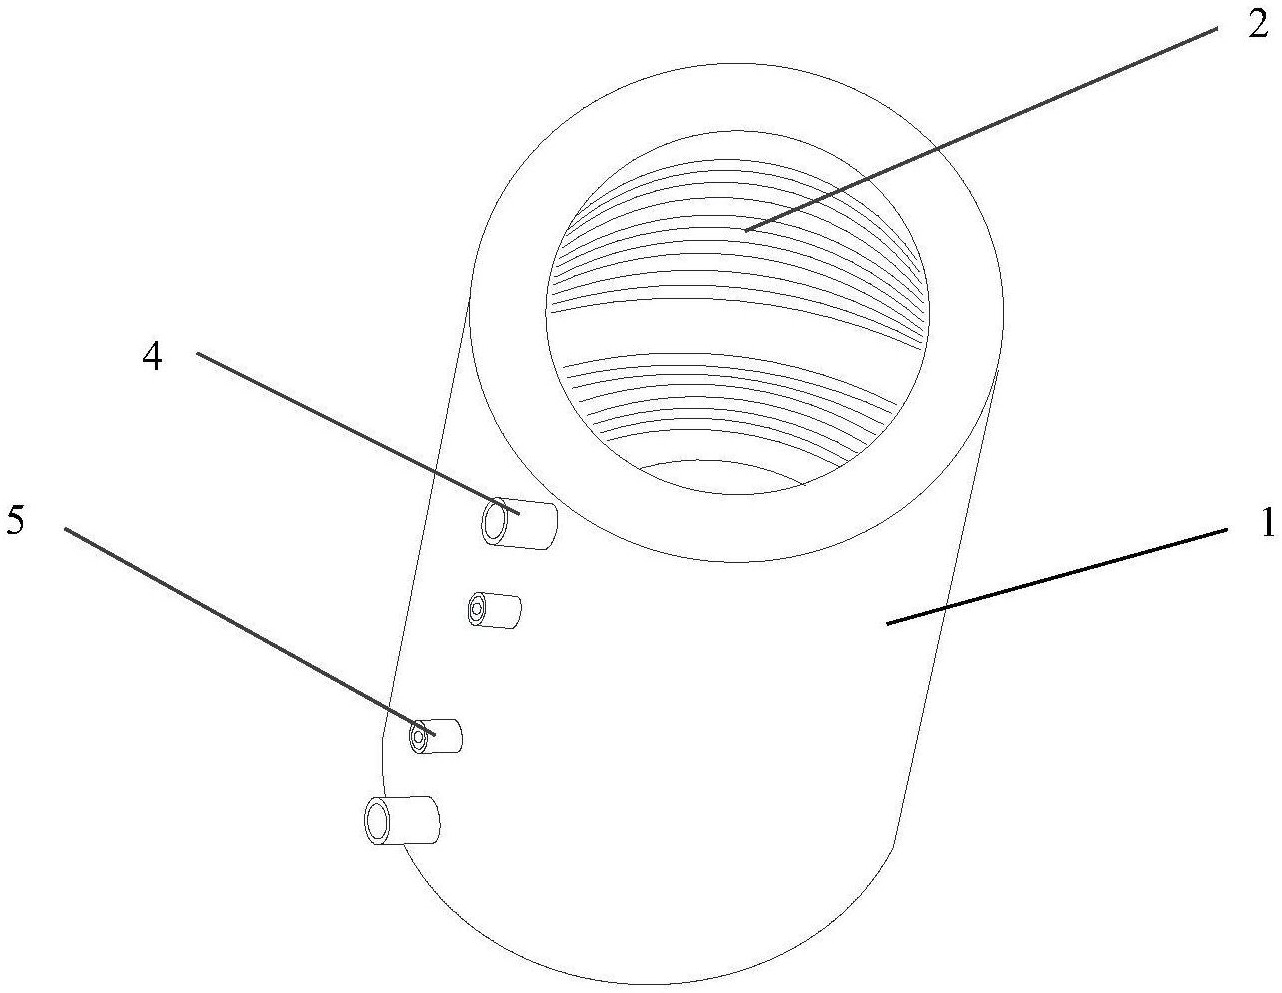 电热熔管体的管壁内表面嵌有螺旋状电热丝,所述电热丝的螺距相等,电